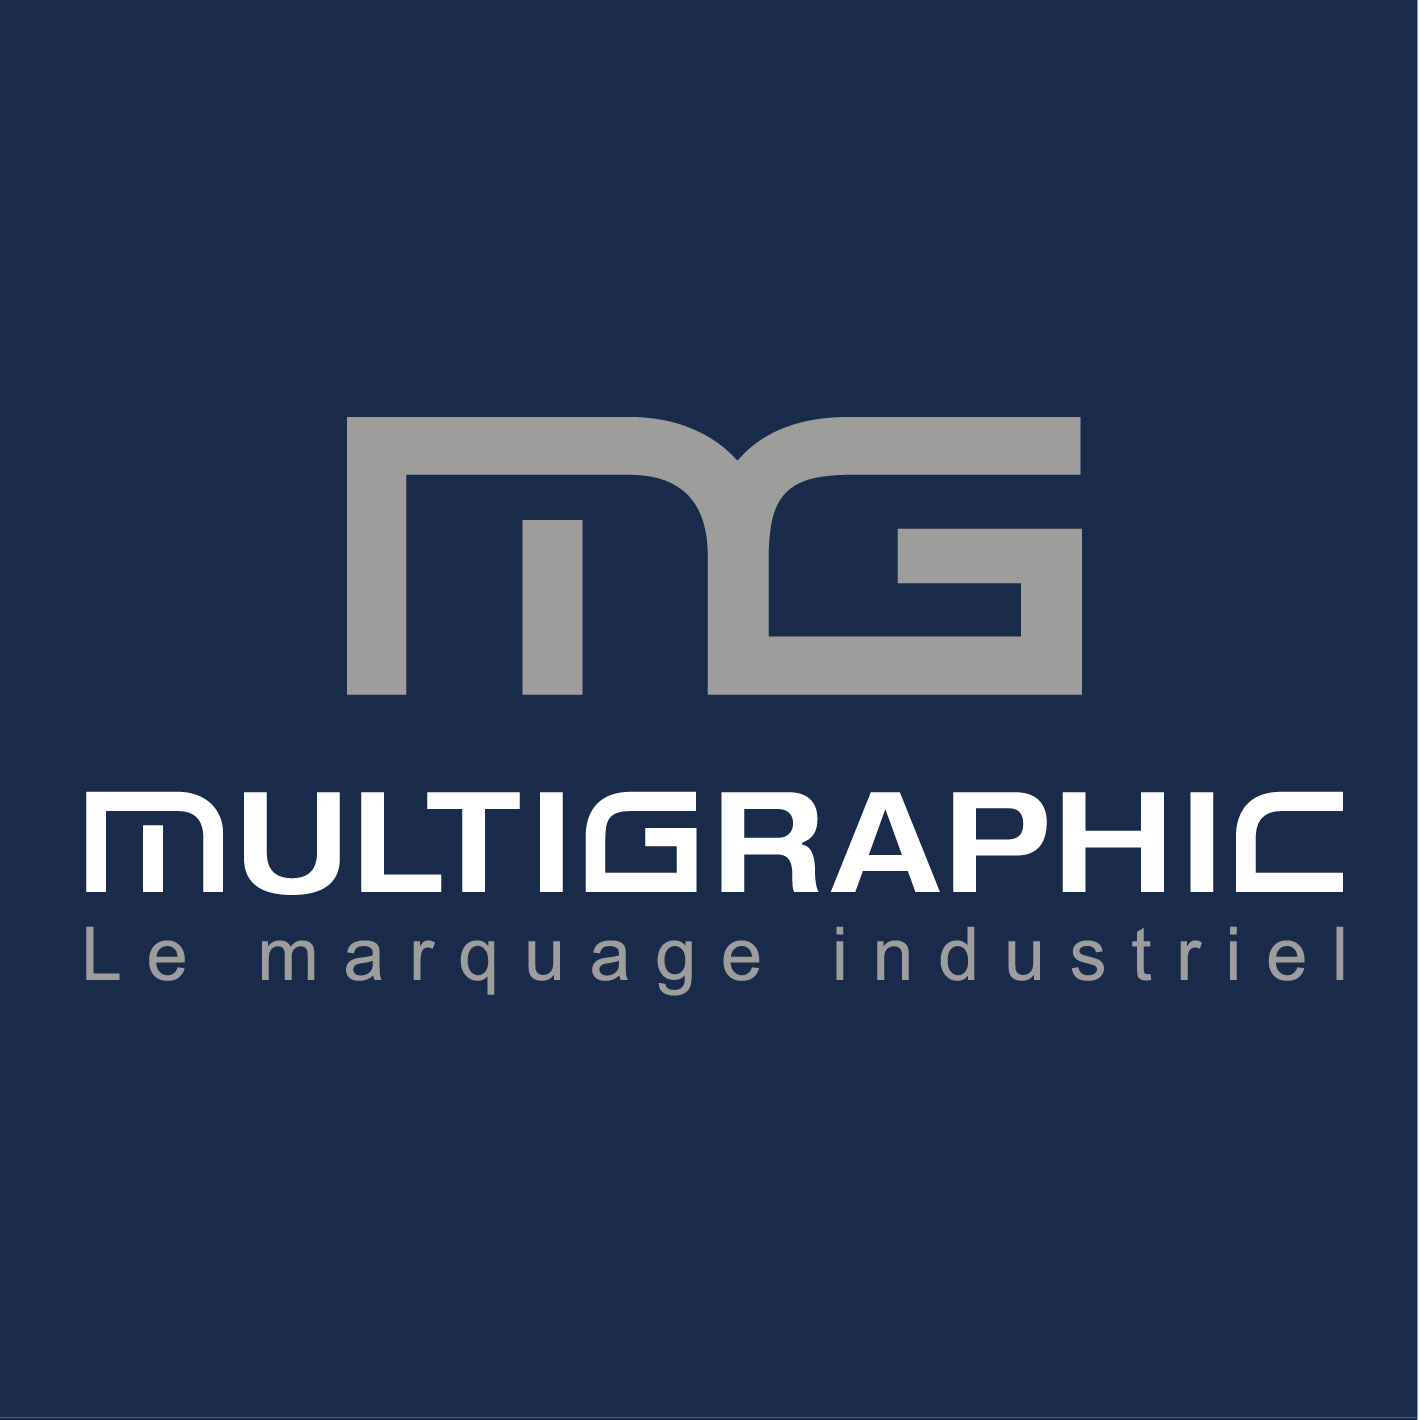 Multigraphic recrute un(e) SÉRIGRAPHE